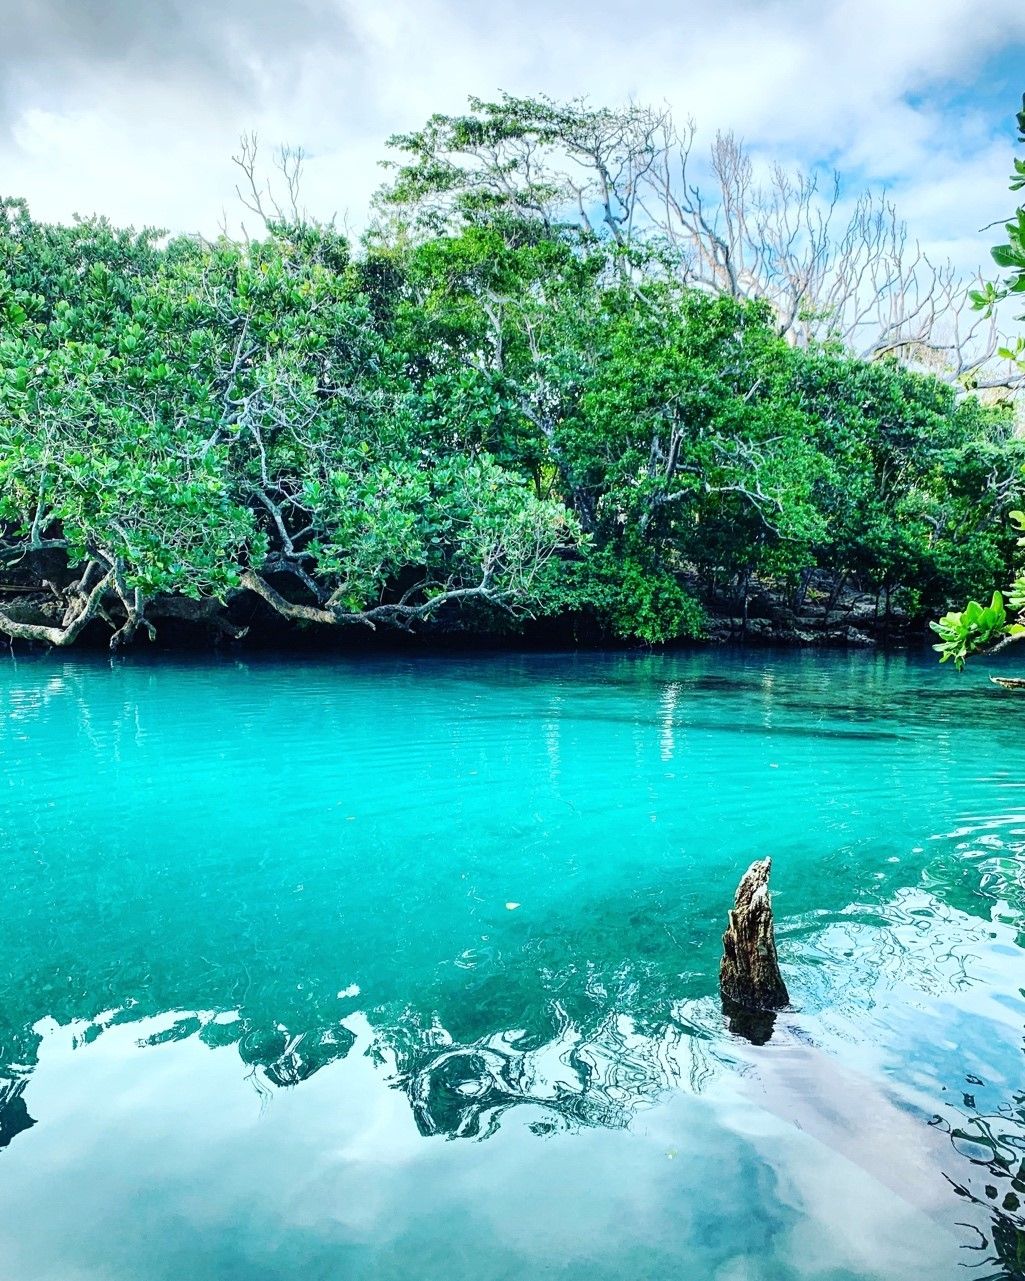 Modrá laguna je jedním z hlavních turistických taháků.